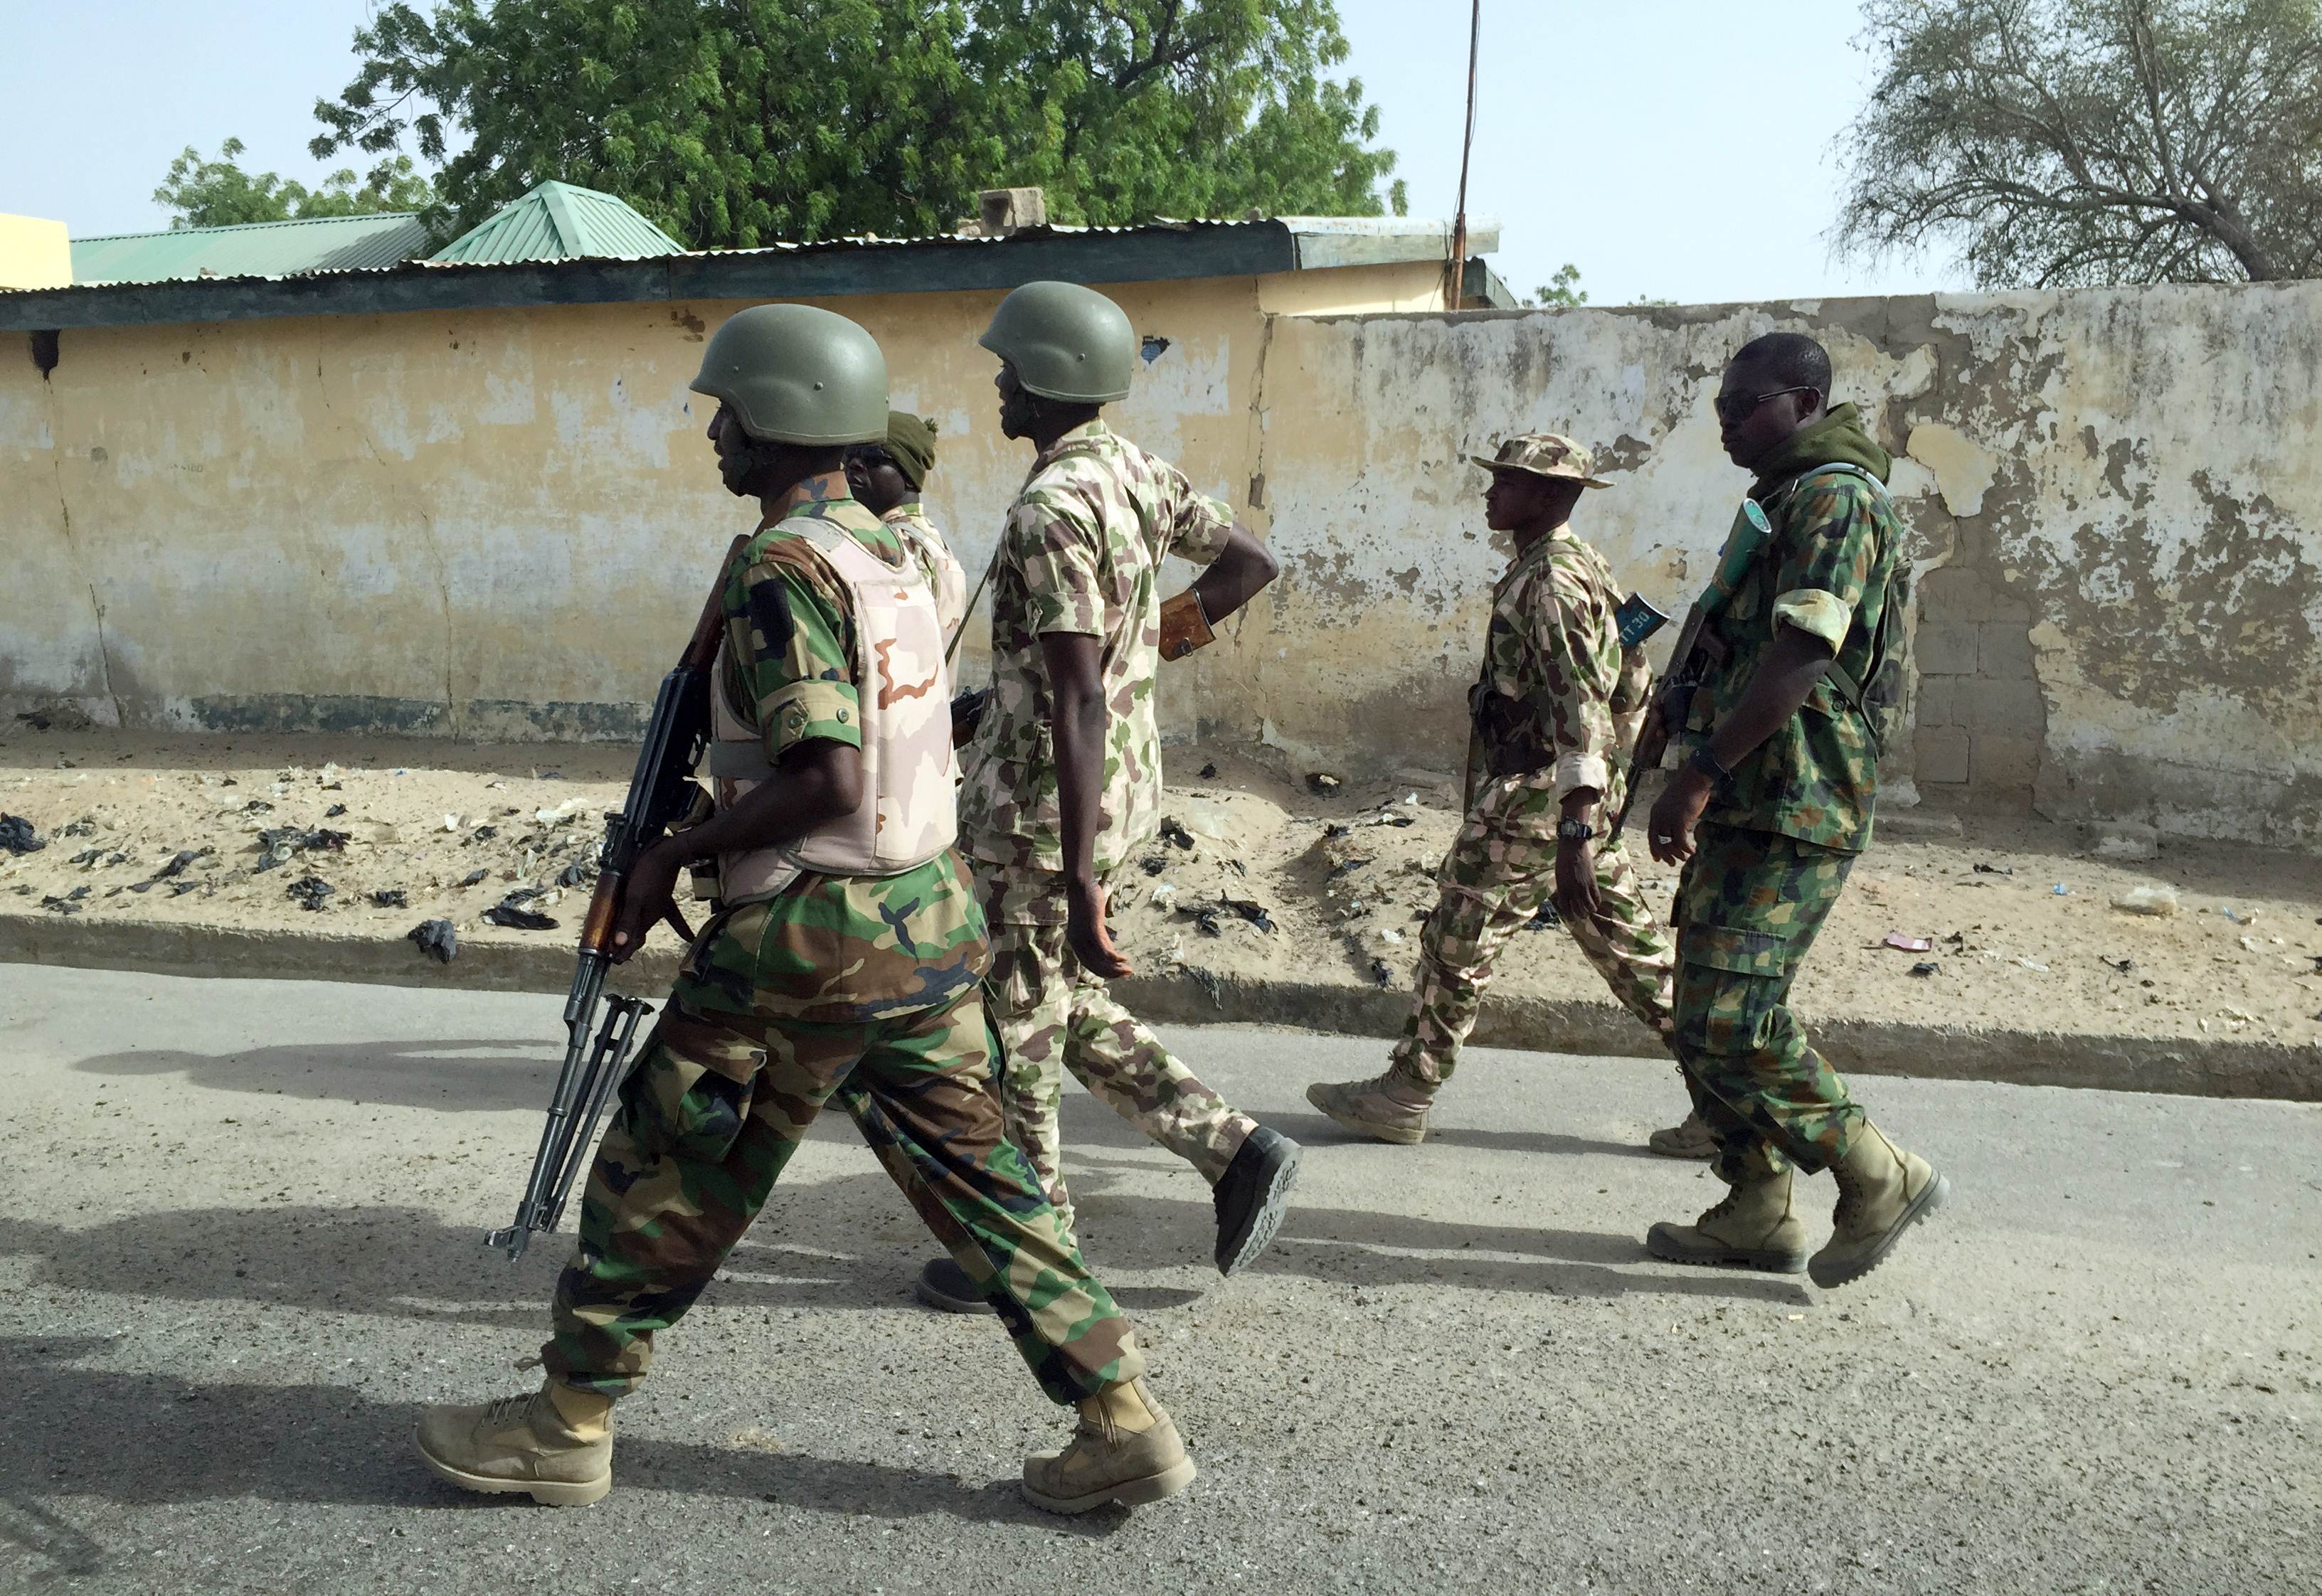 24 Suspected Boko Haram Members Arrested In Edo